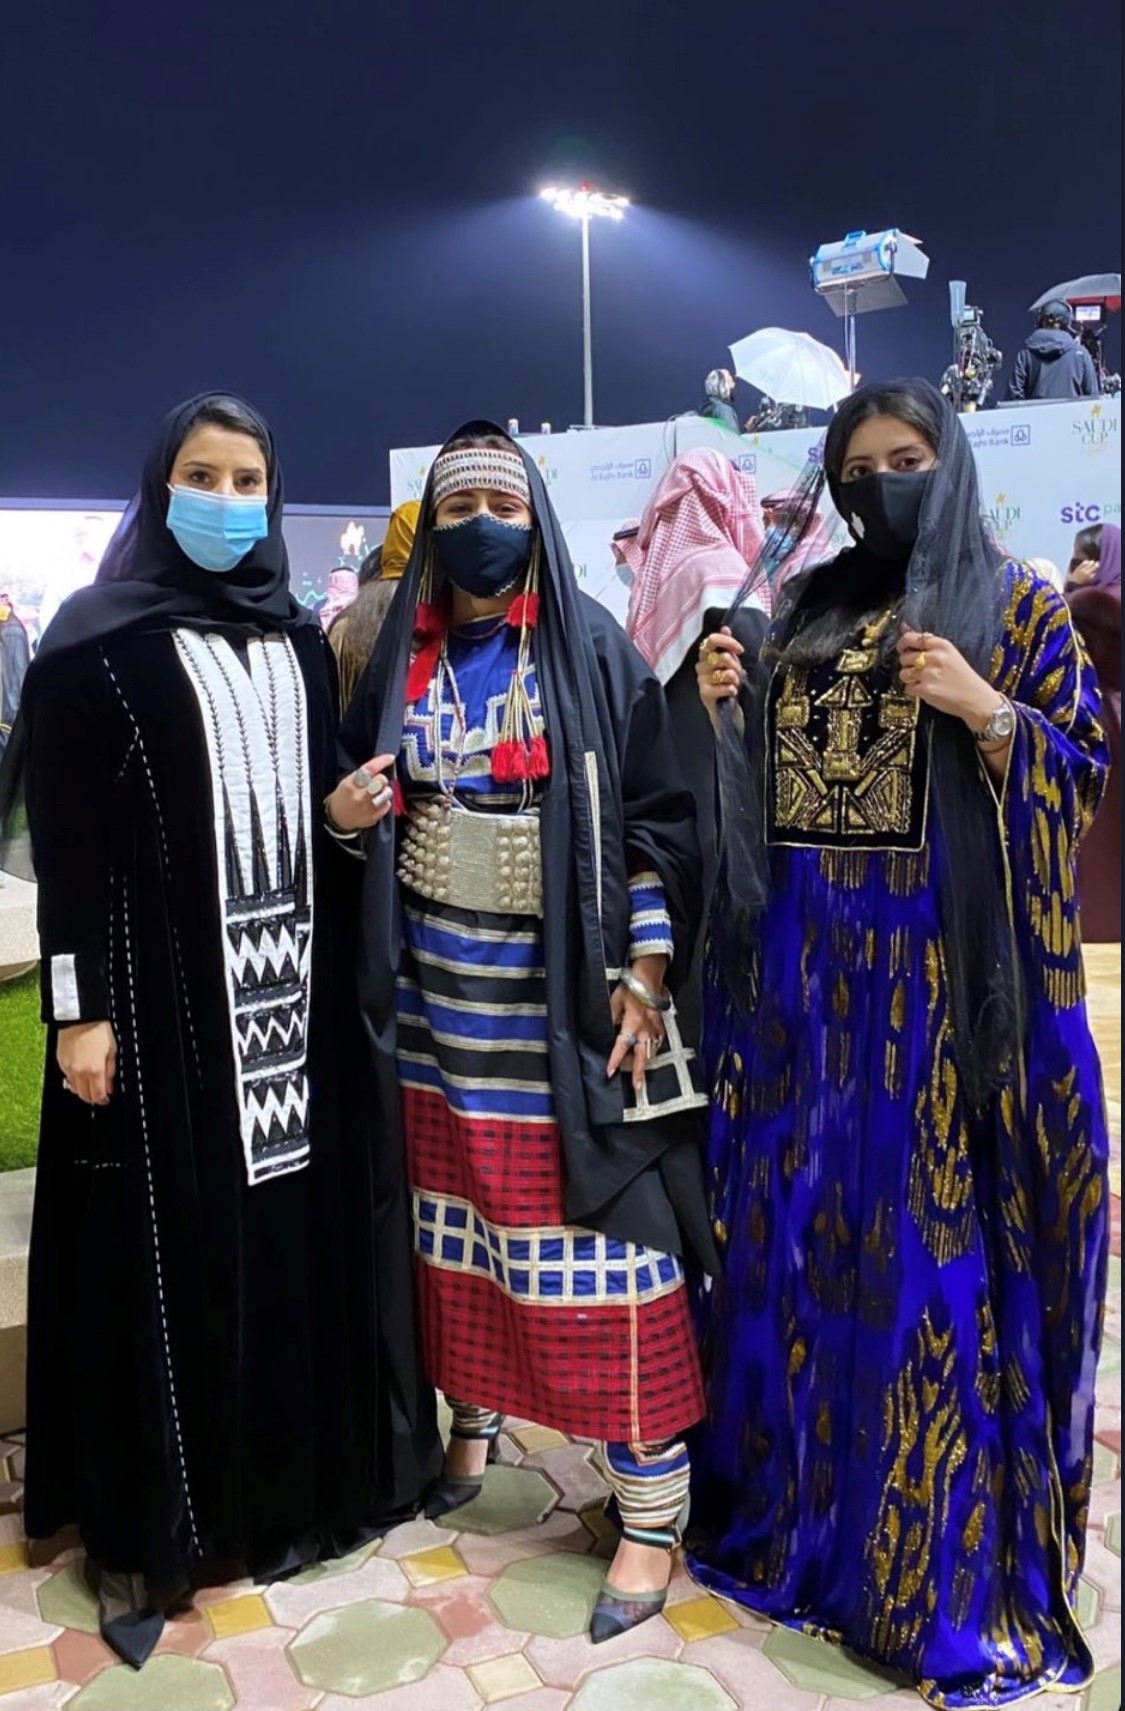 الأزياء التراثية الأصيلة تتألق في كأس السعودية | مجلة سيدتي